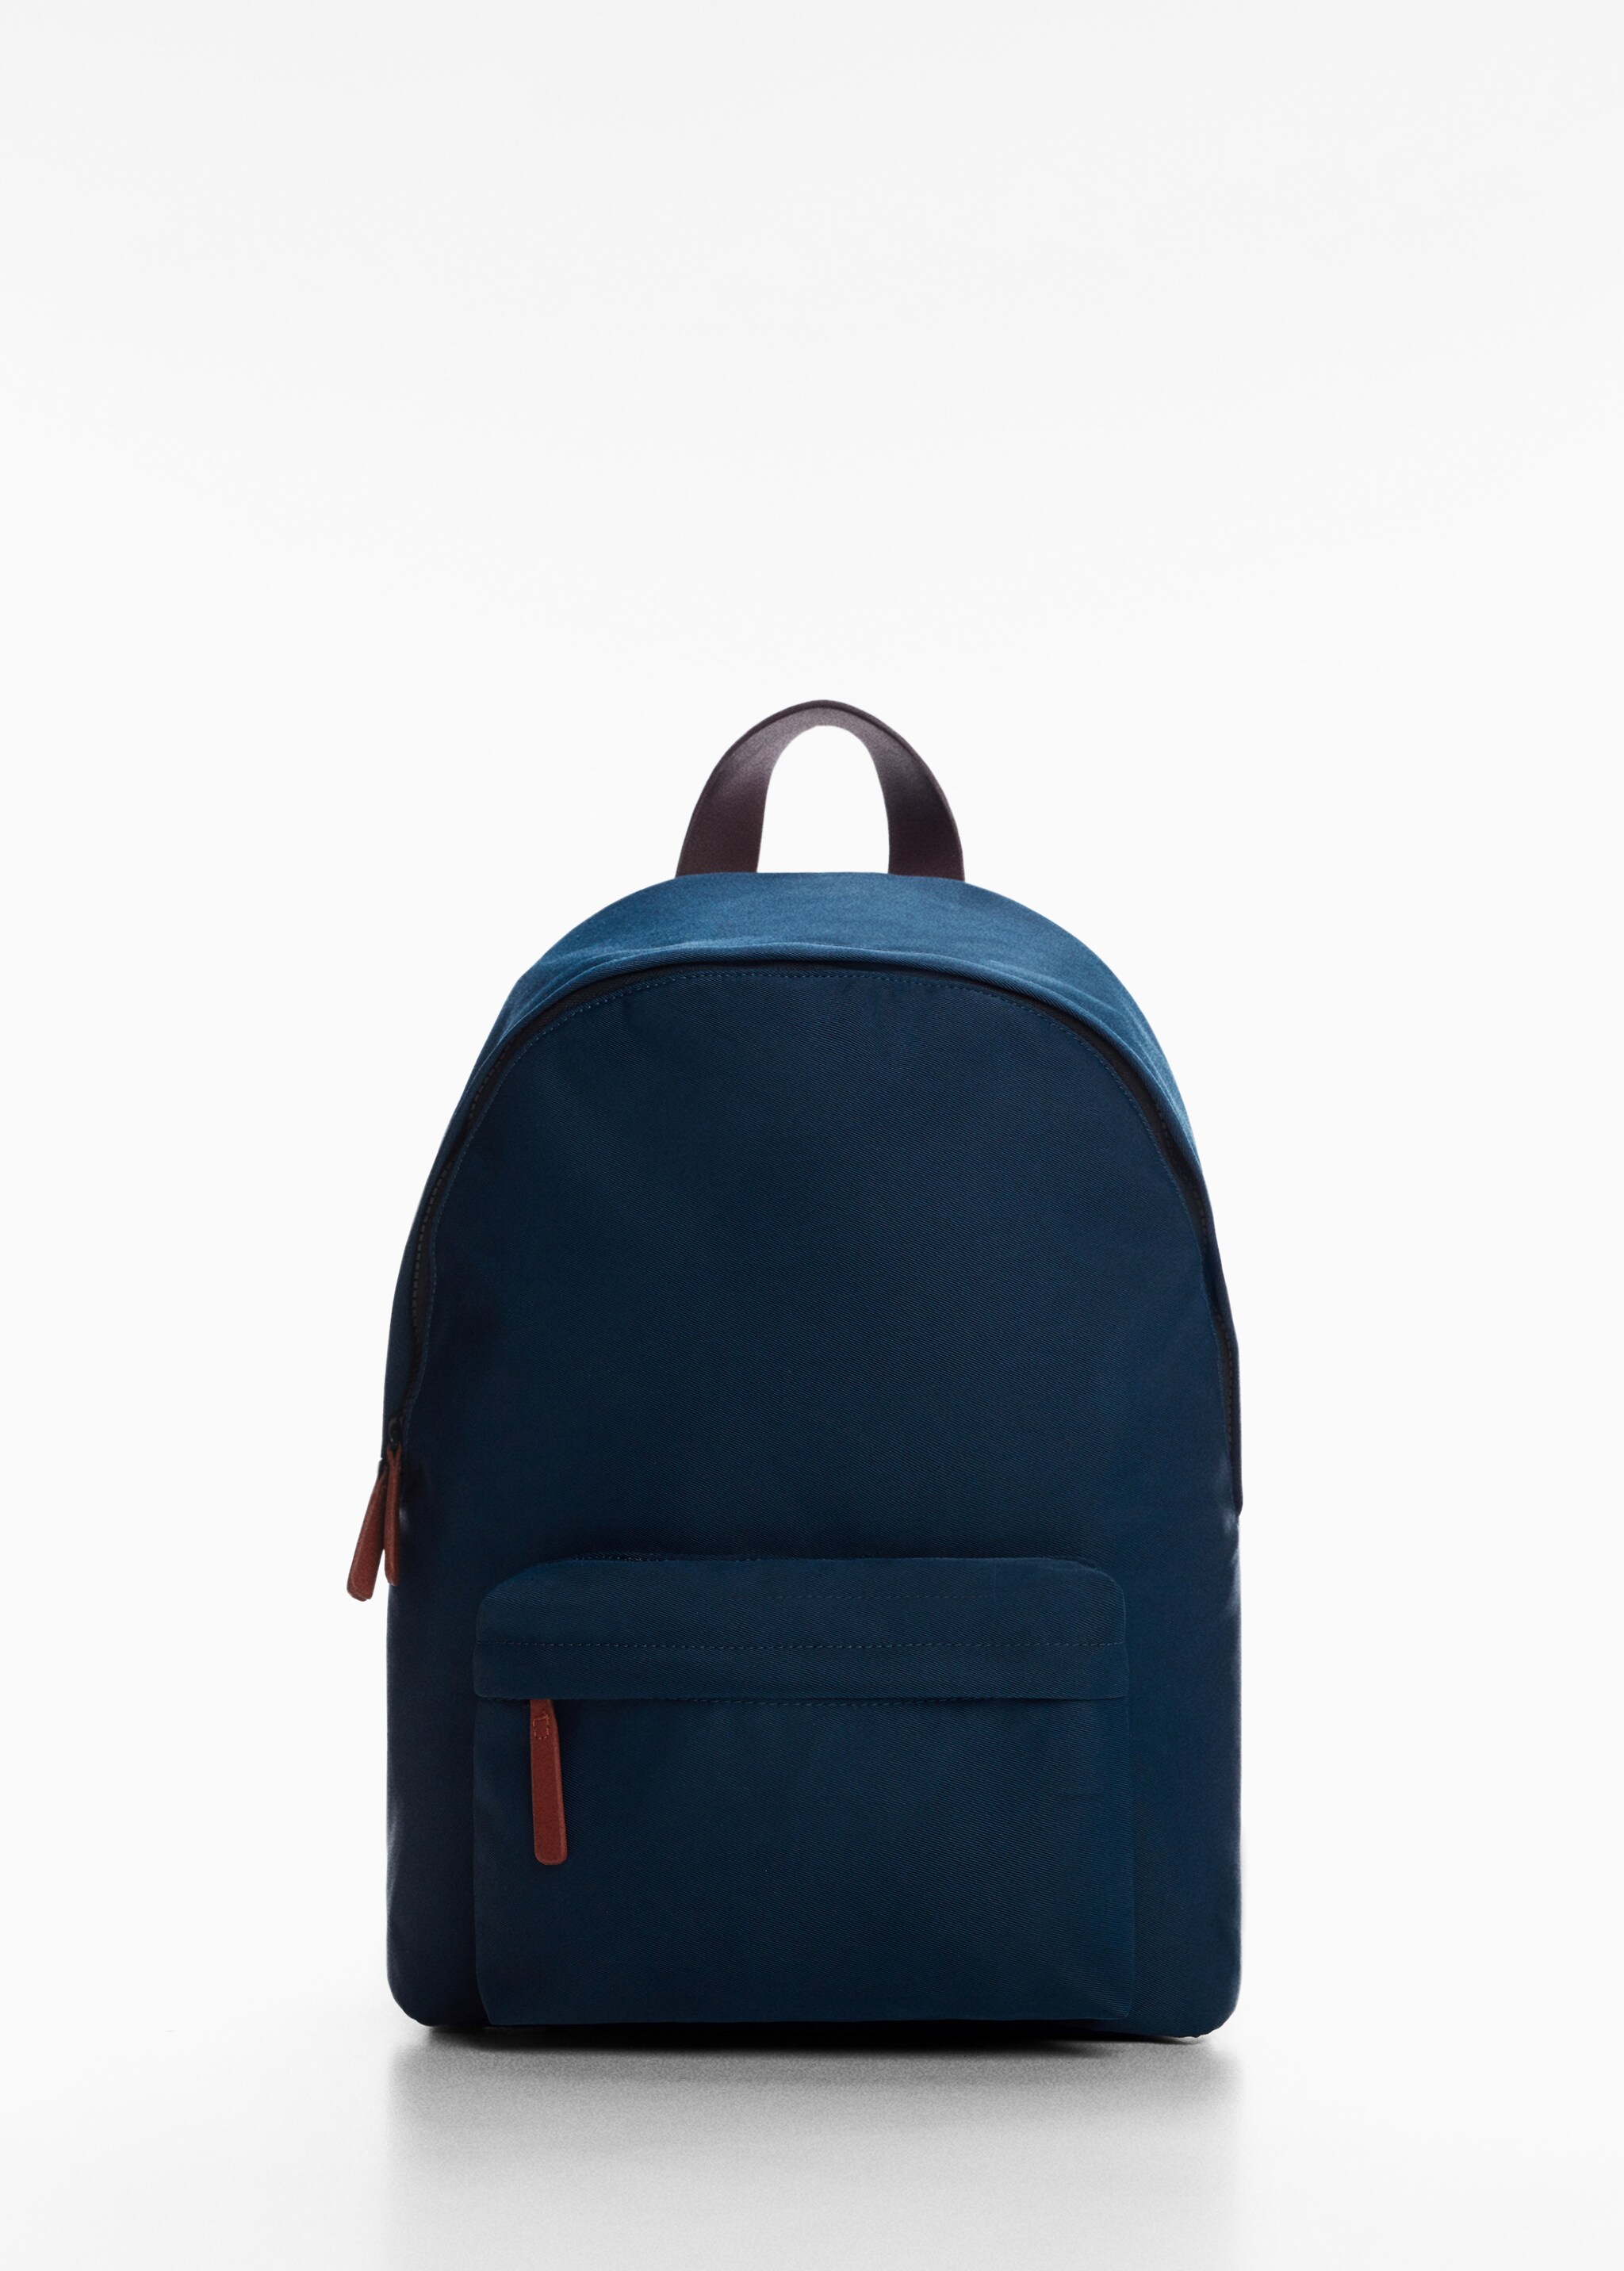 Basic nylon backpack - Article without model